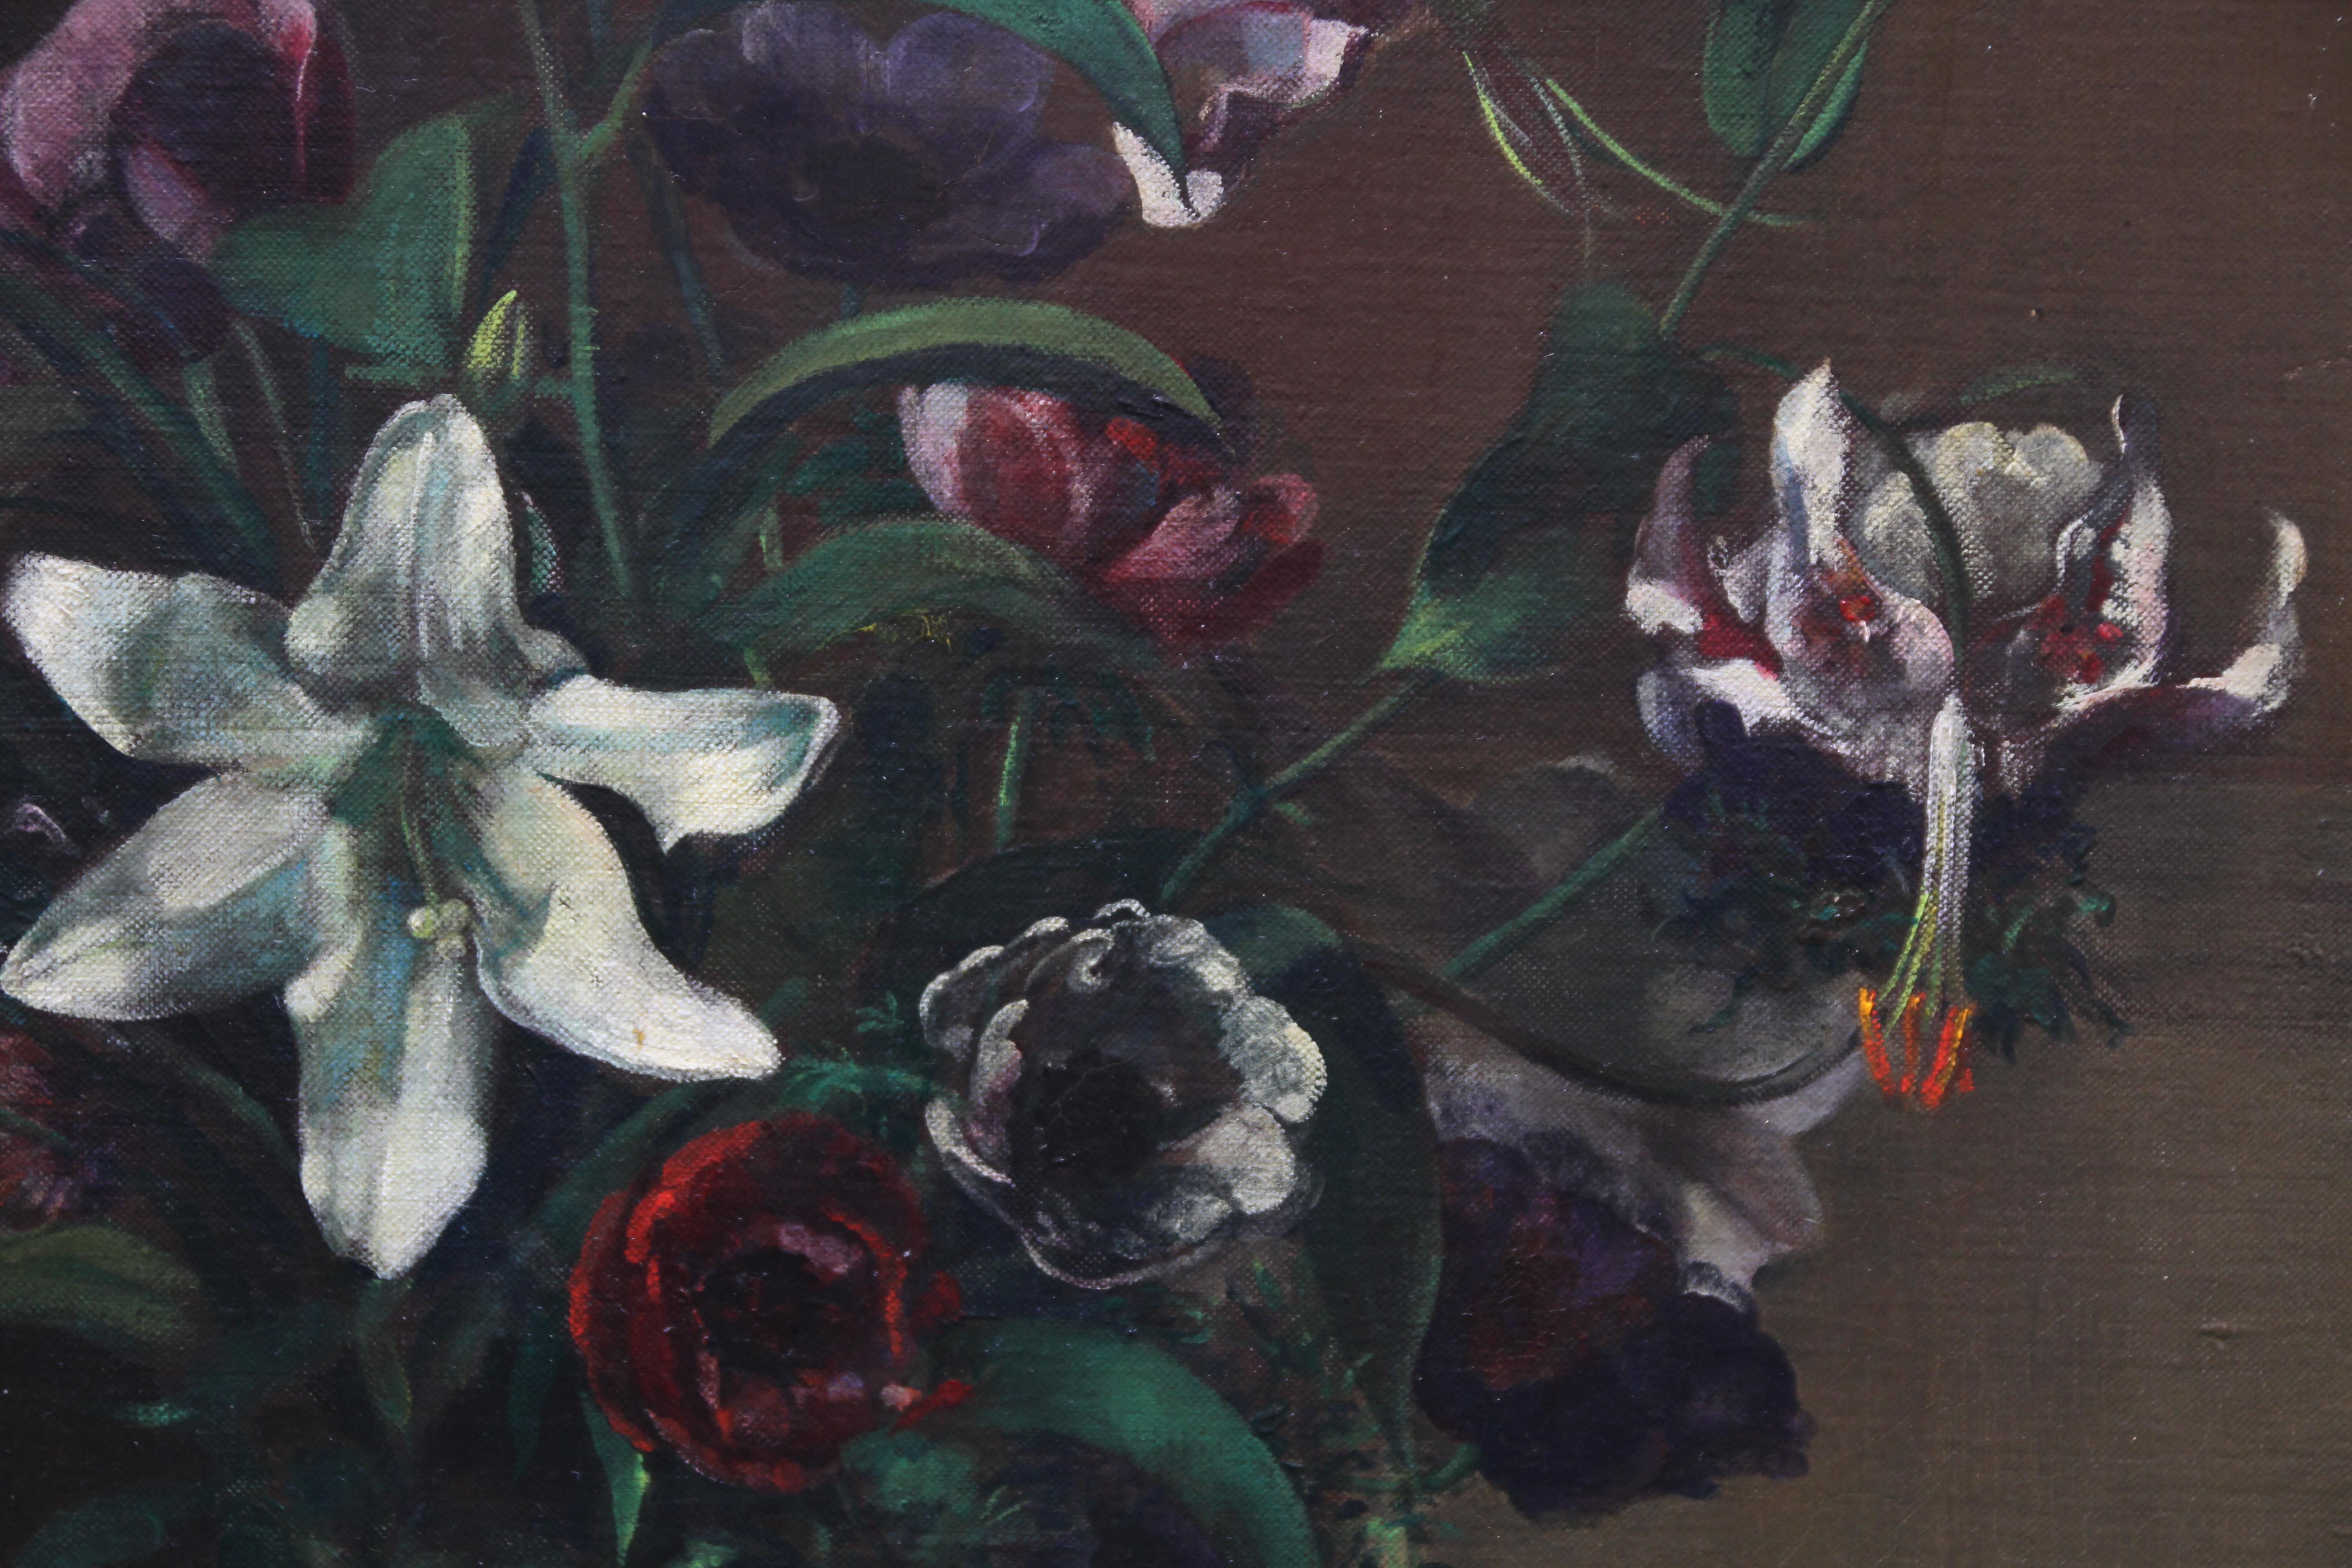 1920s floral arrangements